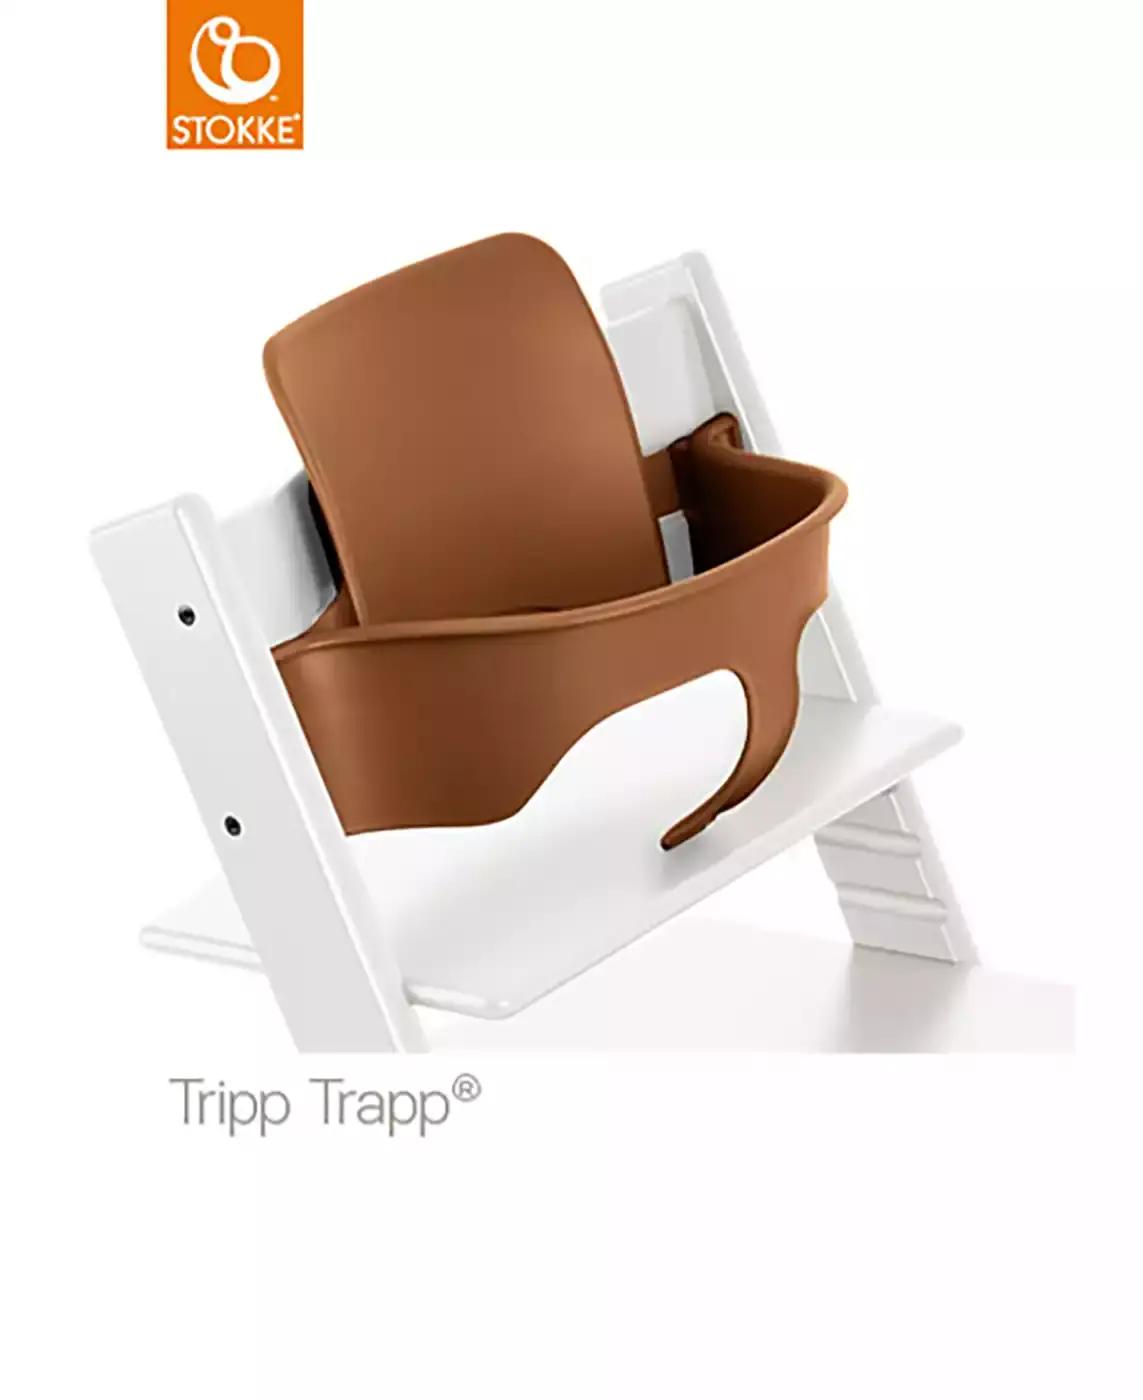 Tripp Trapp® Baby Set walnut STOKKE Braun 2000540601000 2